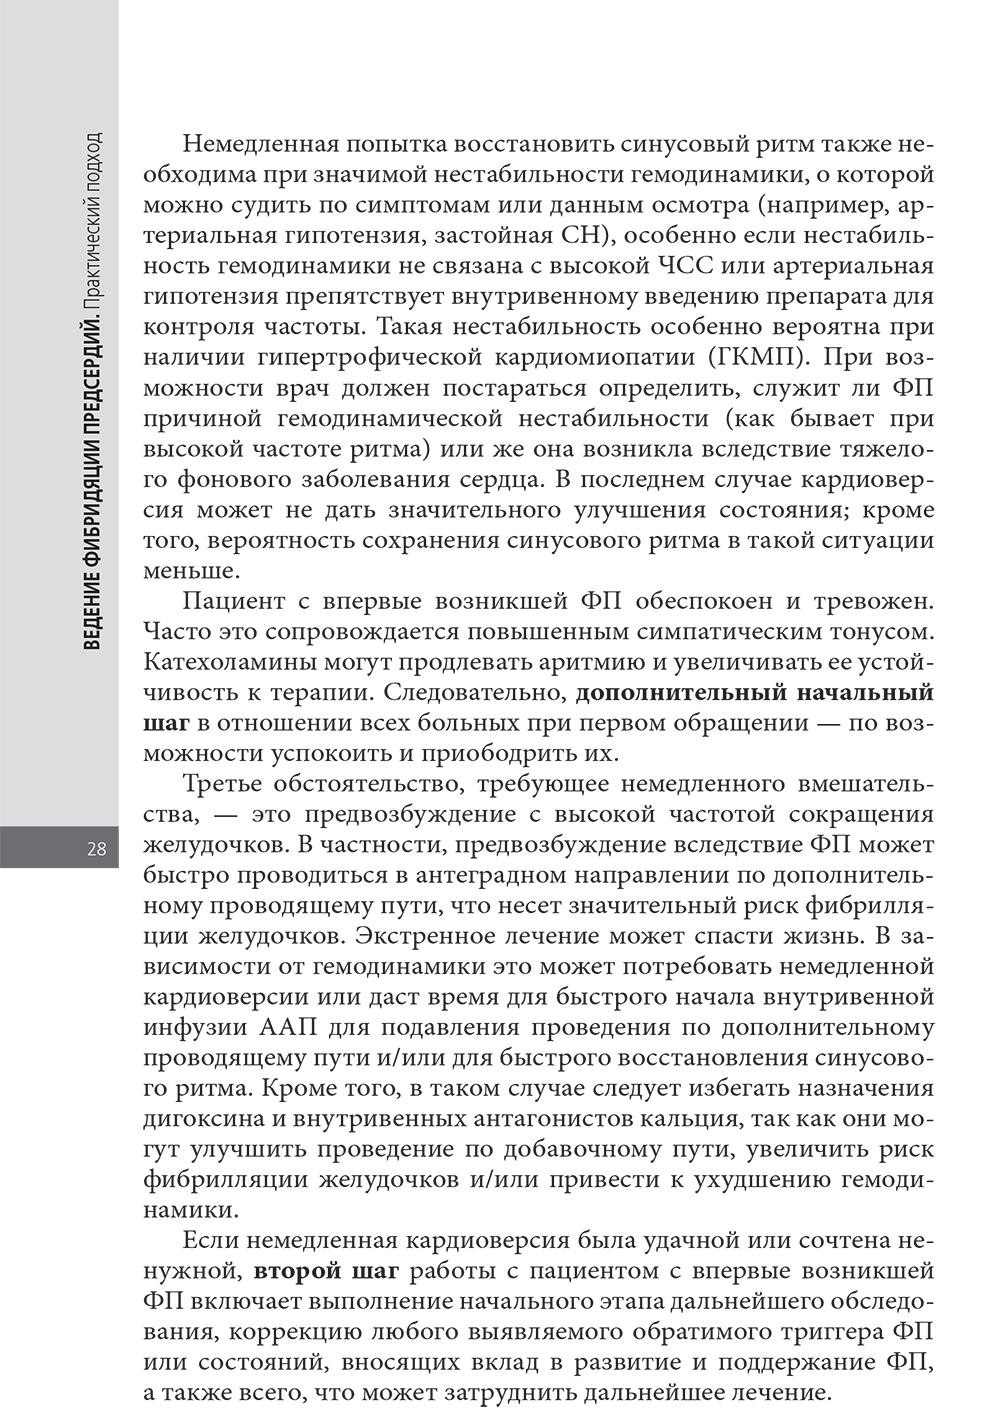 Пример страницы из книги "Ведение фибрилляции предсердий: практический подход" - М. Шинаса, А. Джона Камма